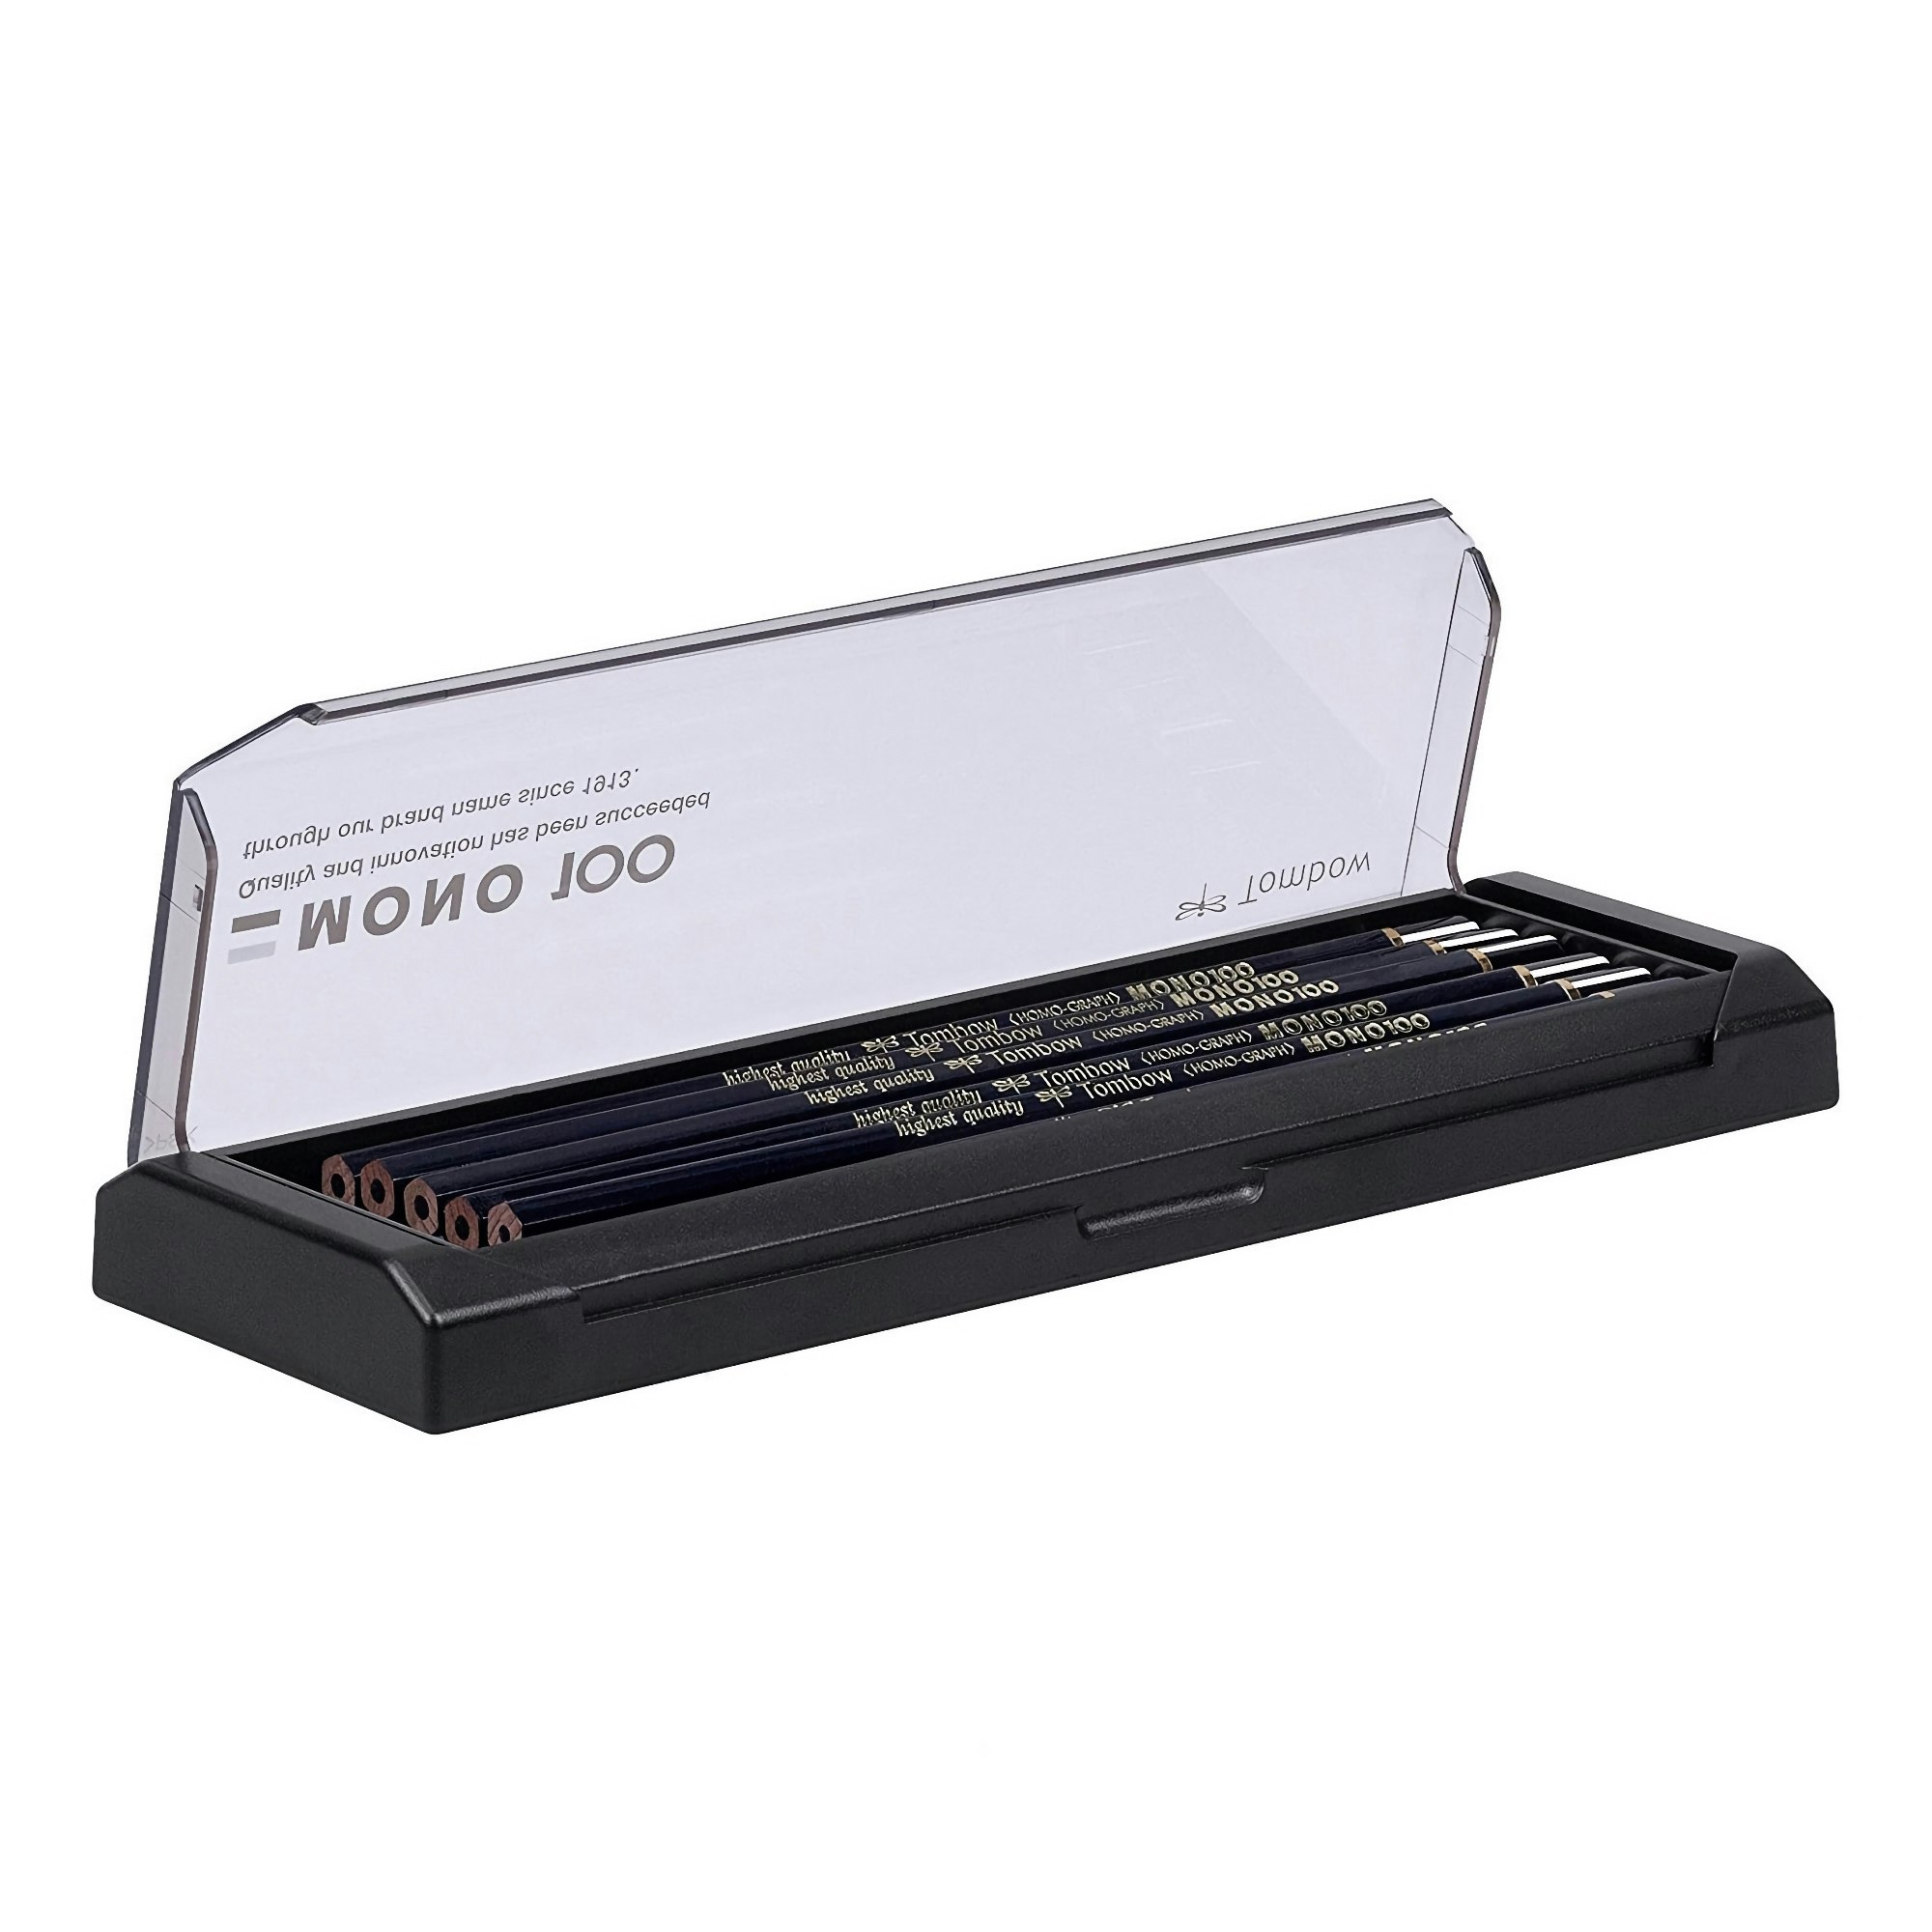 Tombow : Mono 100 : Pencil : 6b